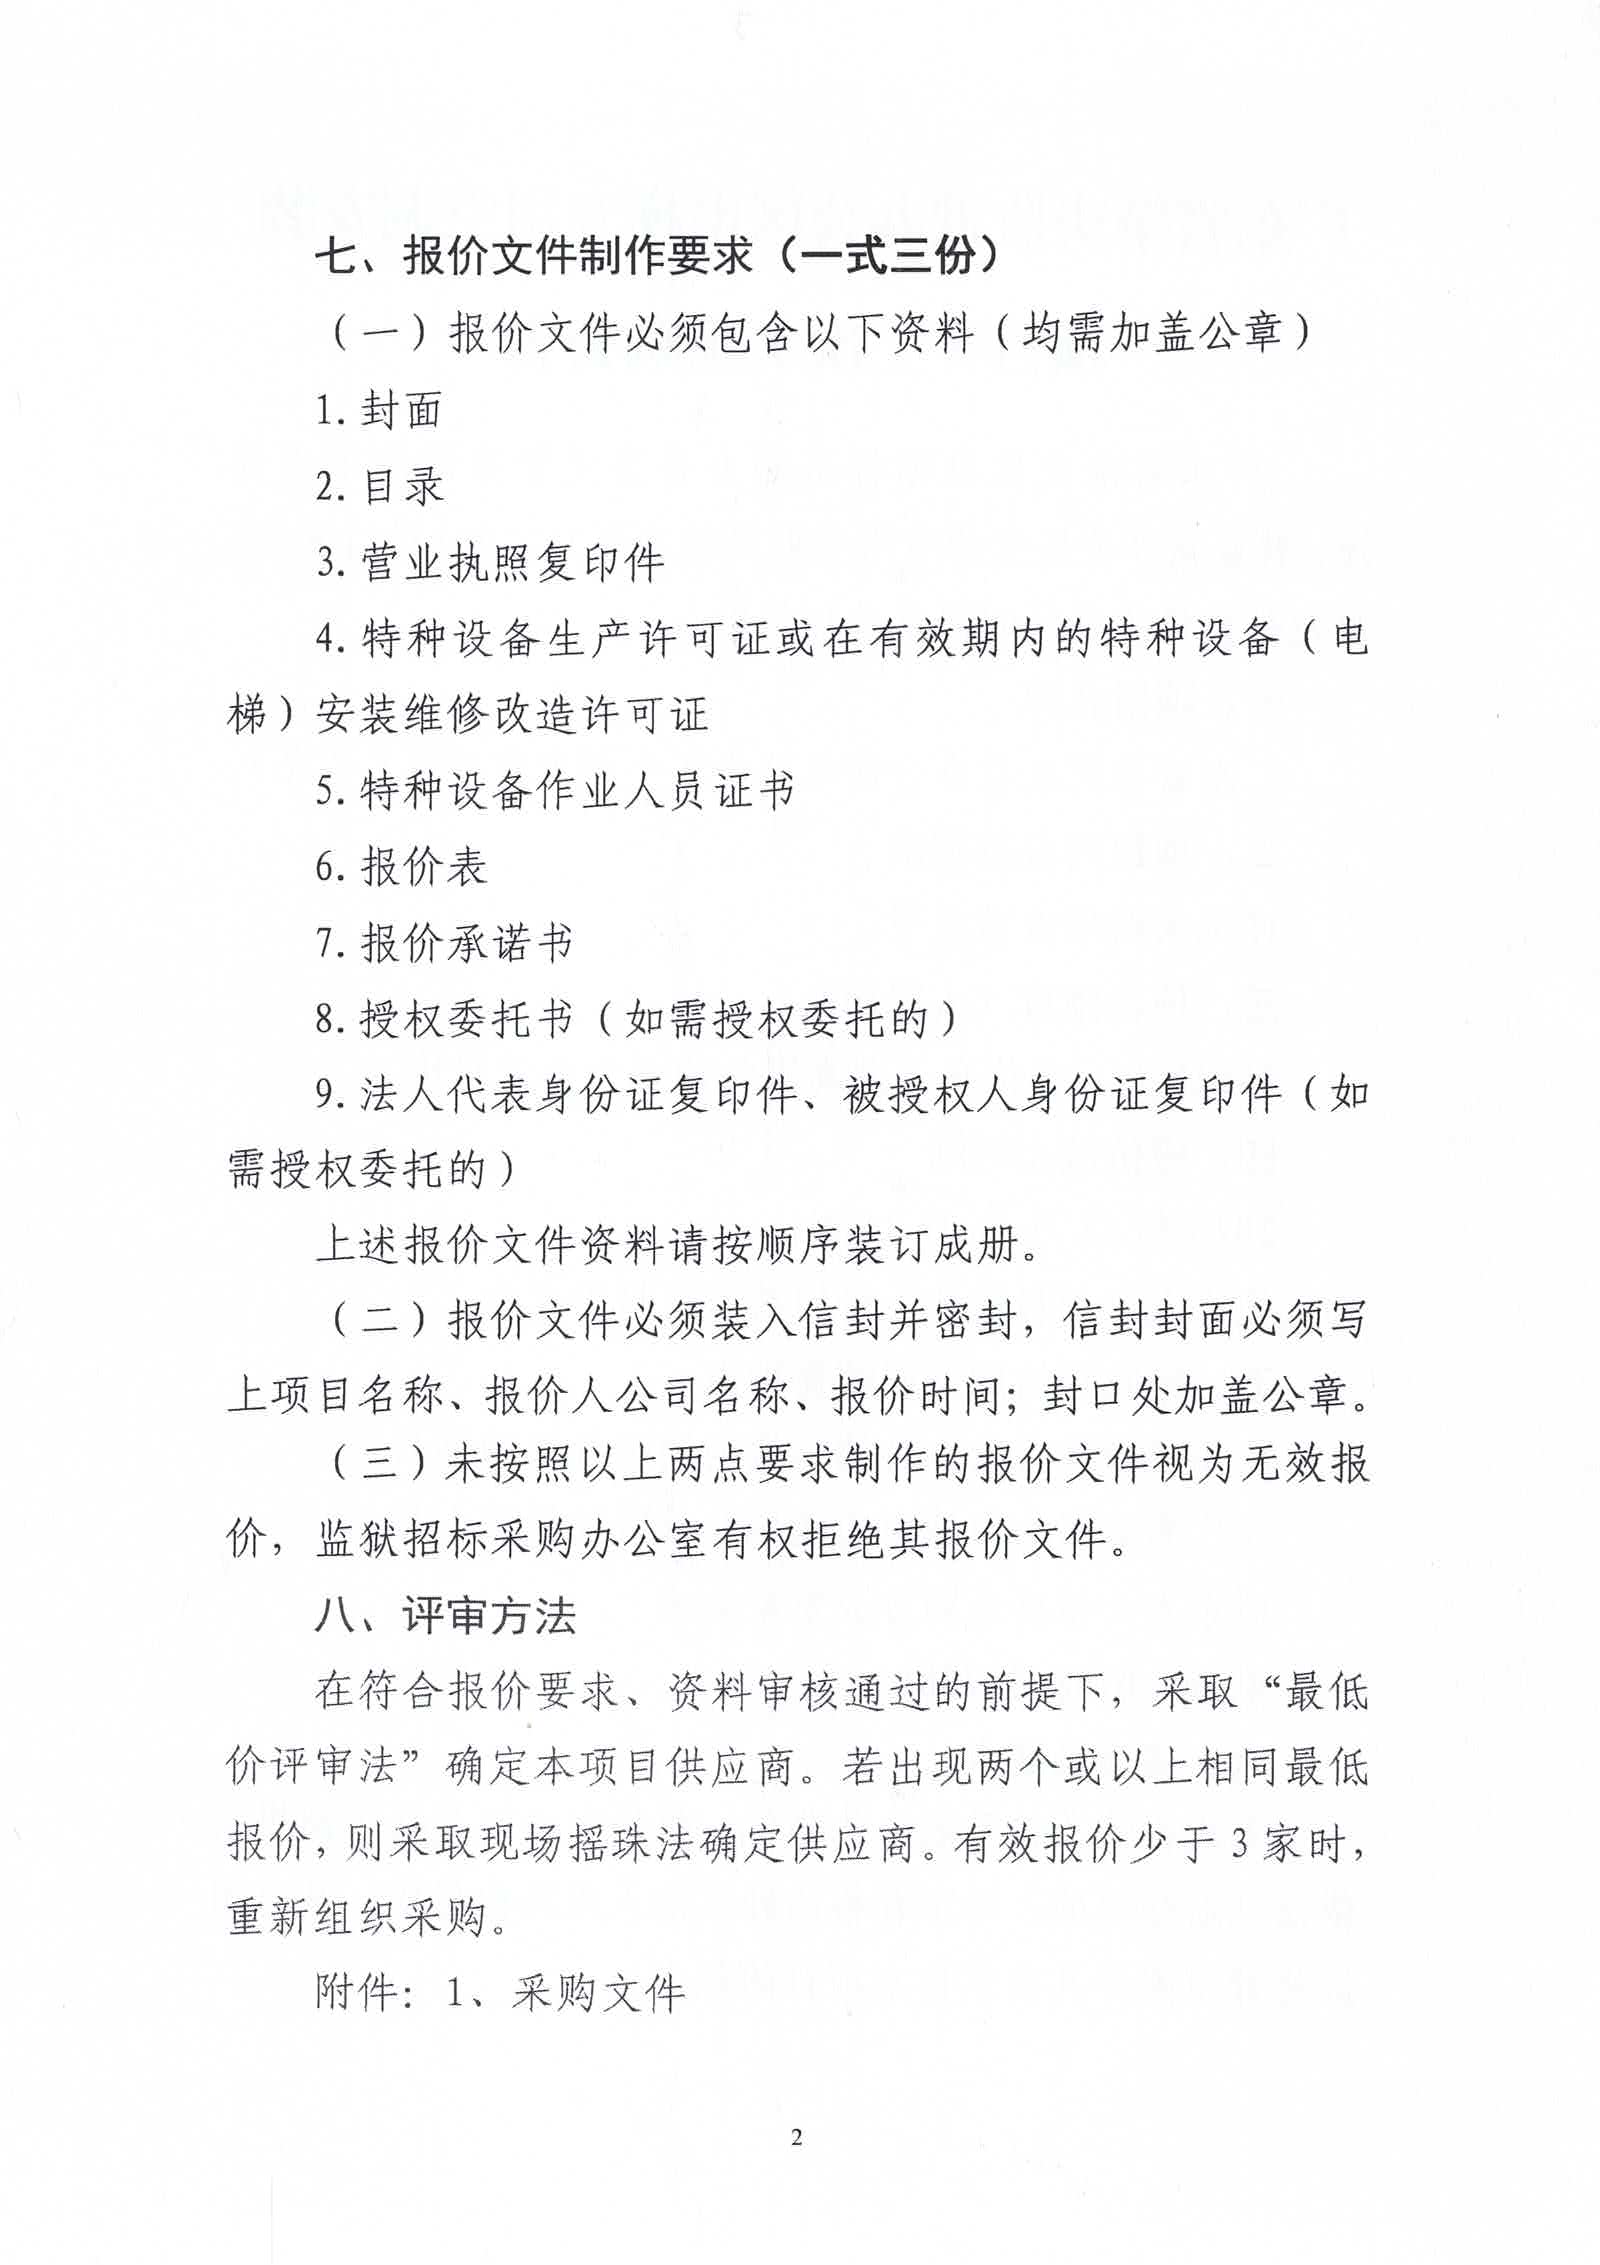 广东省肇庆监狱办公区电梯专用空调安装项目（二次）采购公告2.jpg/